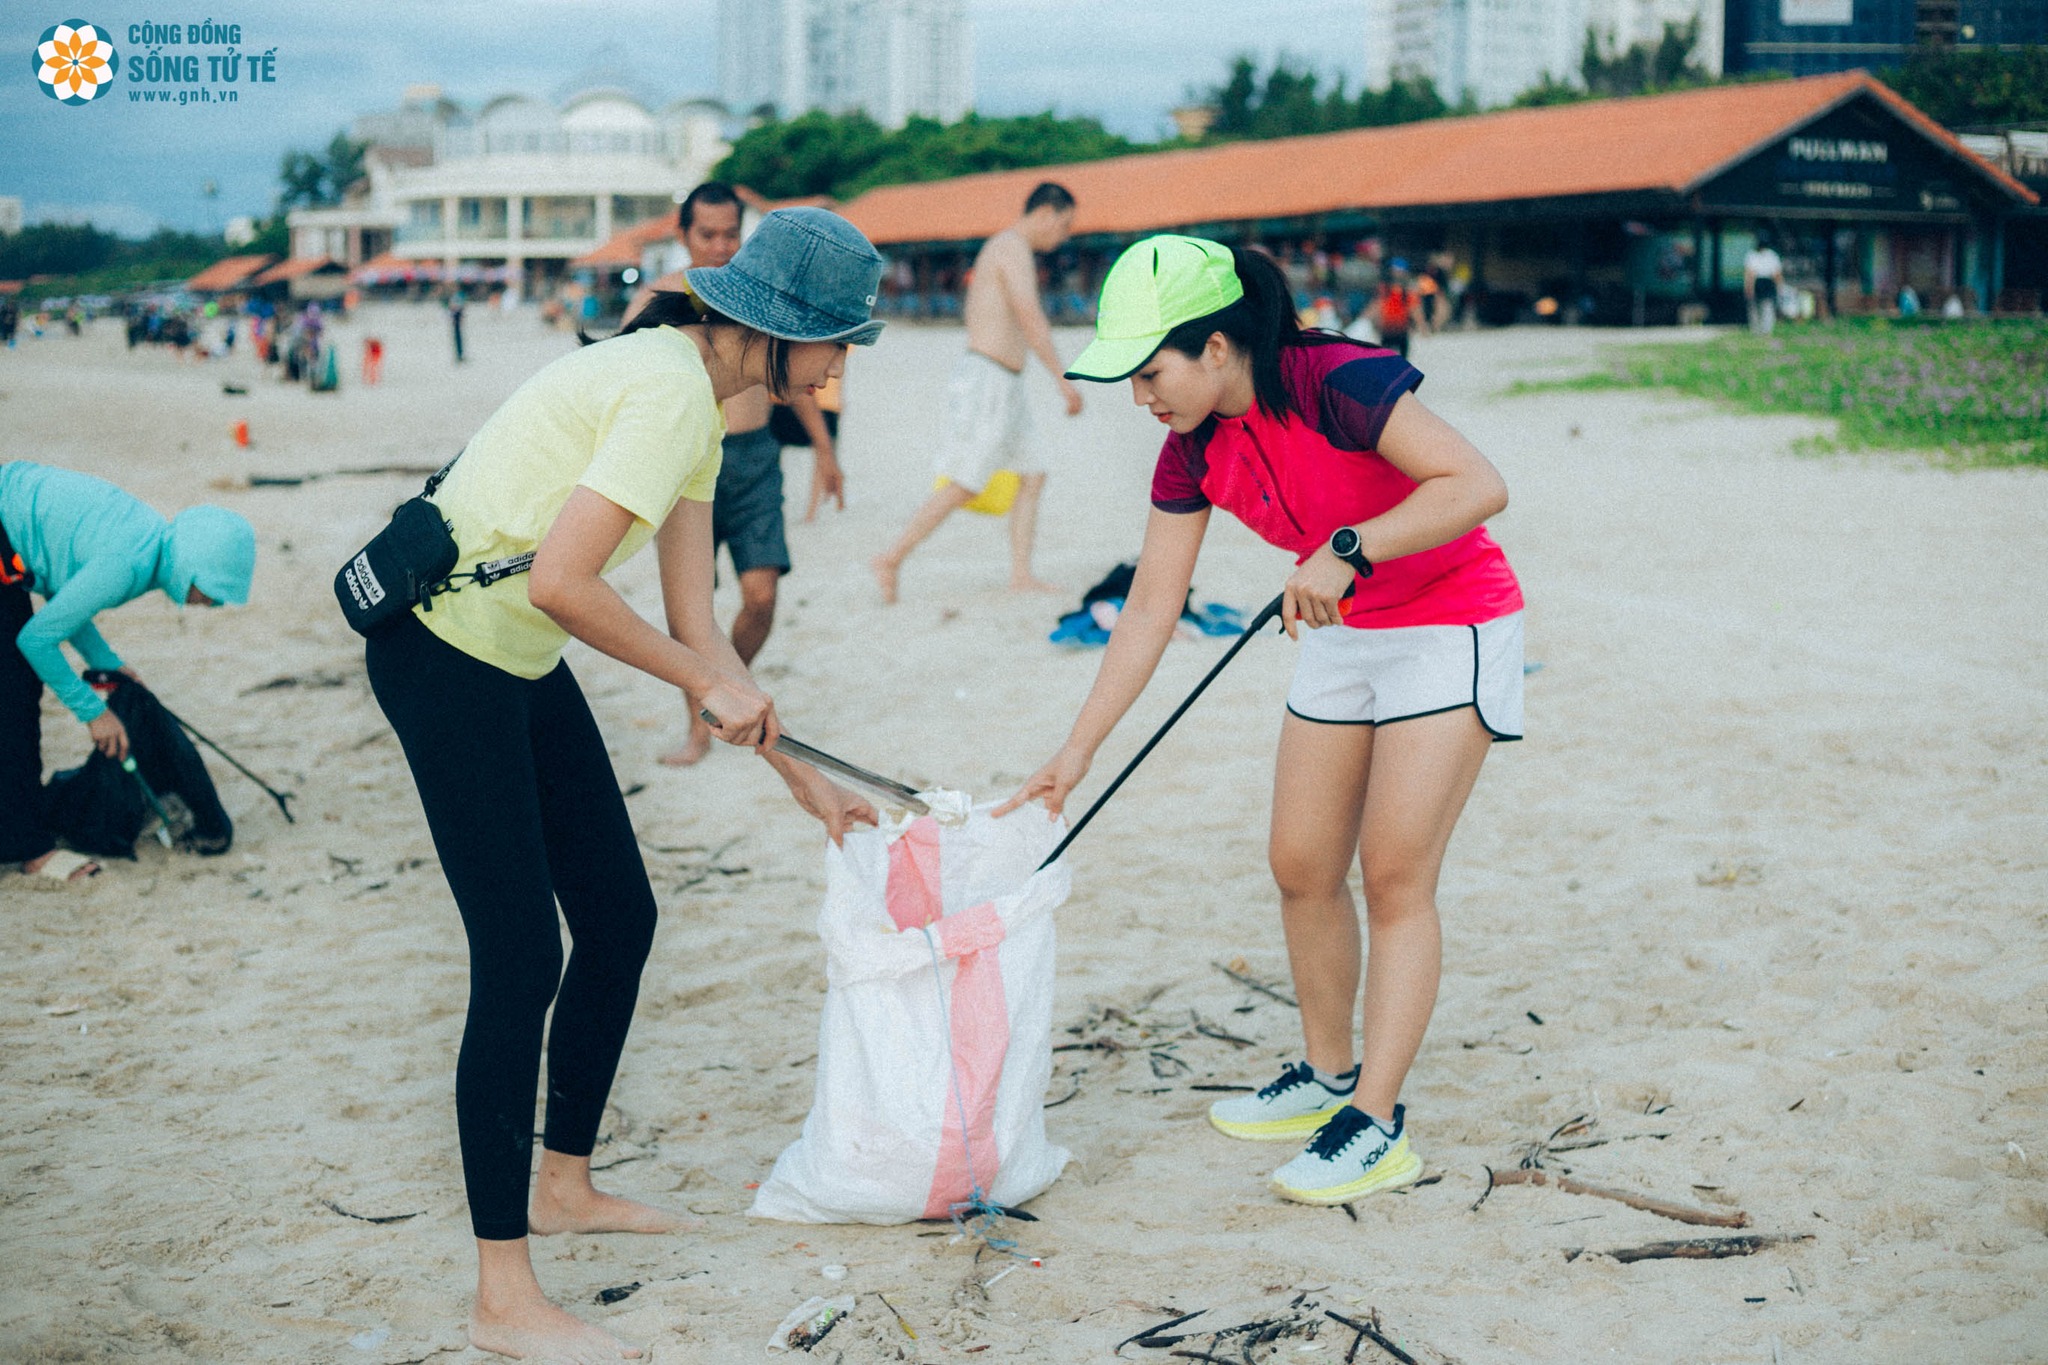 Các thành viên GNH Vũng Tàu tham gia nhặt rác, làm sạch bãi biển tại khu vực Bãi Sau, TP. Vũng Tàu. Ảnh: GNH VŨNG TÀU